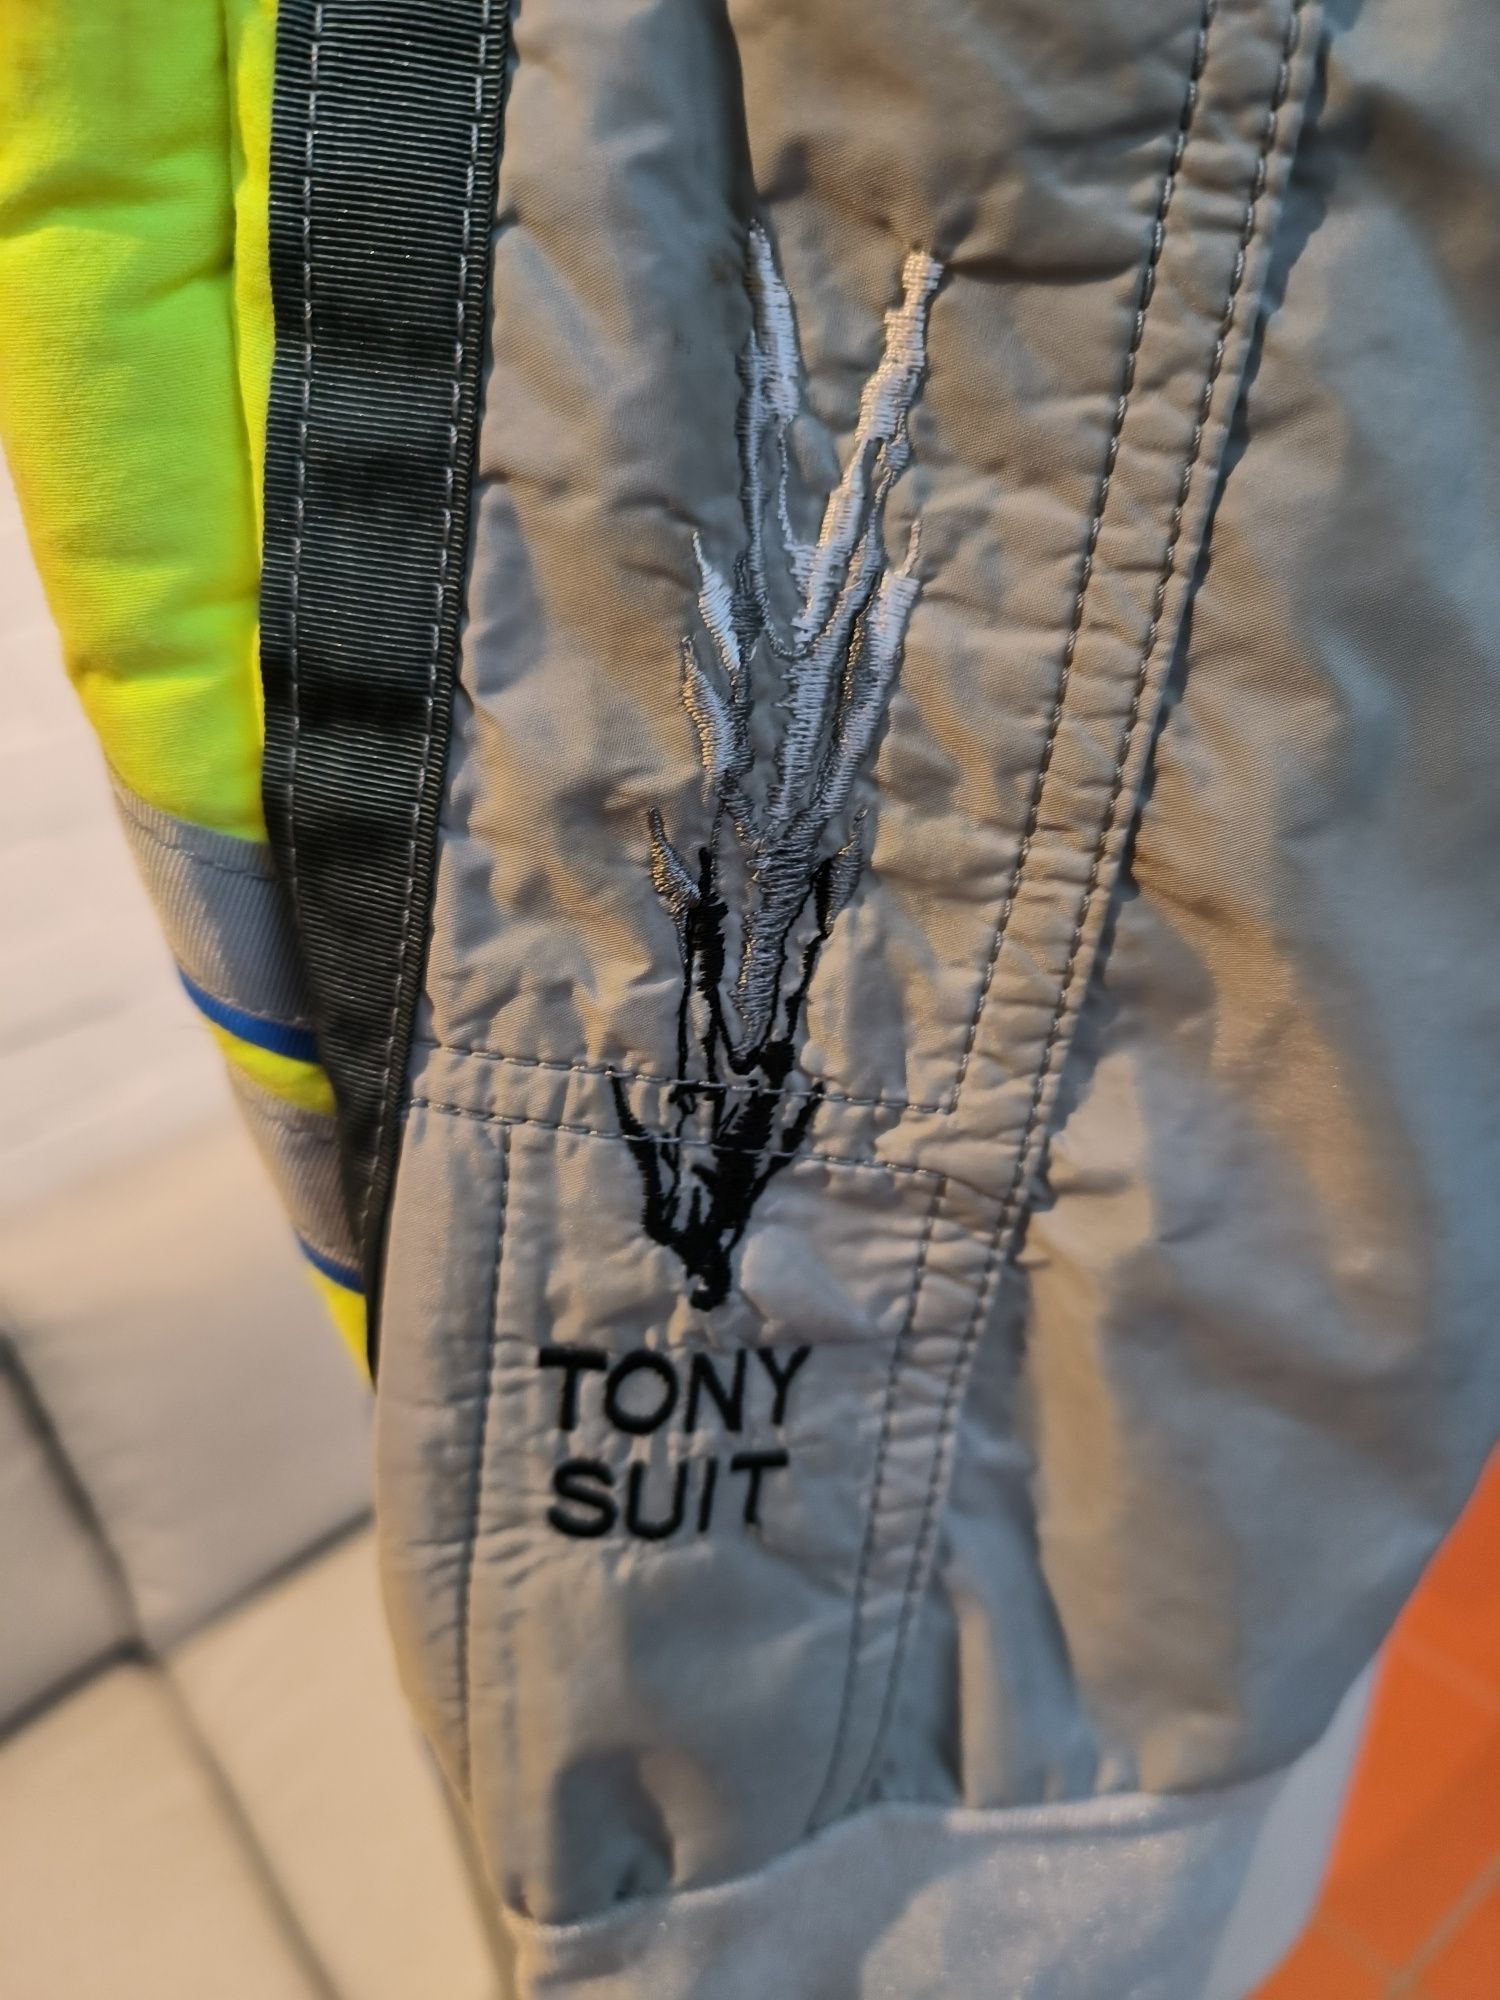 Tony Suit - Jump Suit Skydive